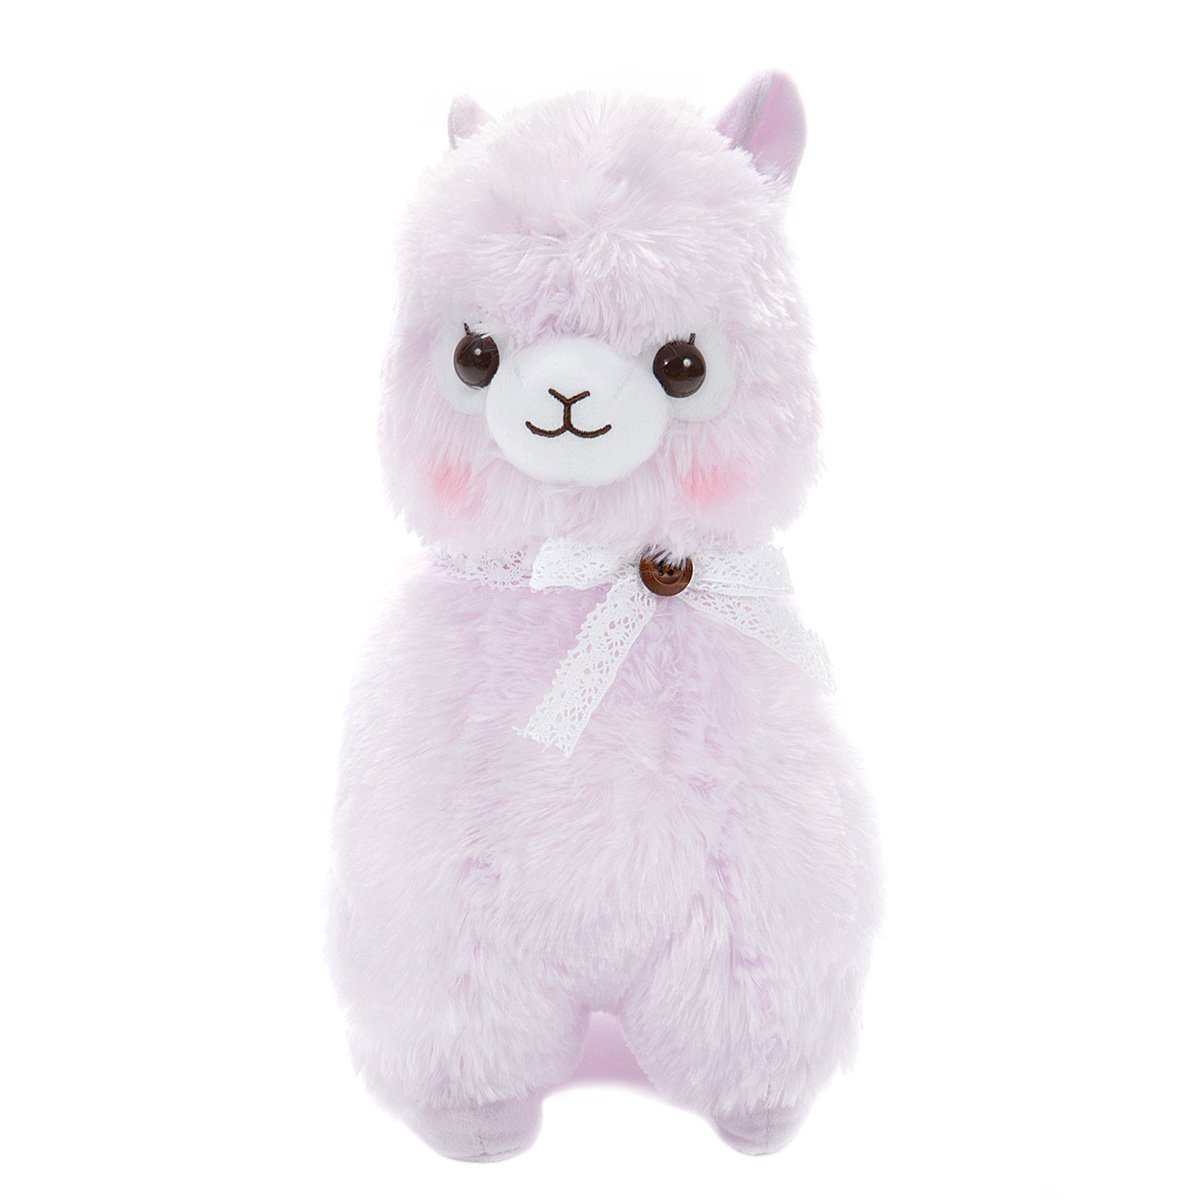 Plush Alpaca, Amuse, Alpacasso, Sumiere-chan, Purple, 15 Inches BIG Size